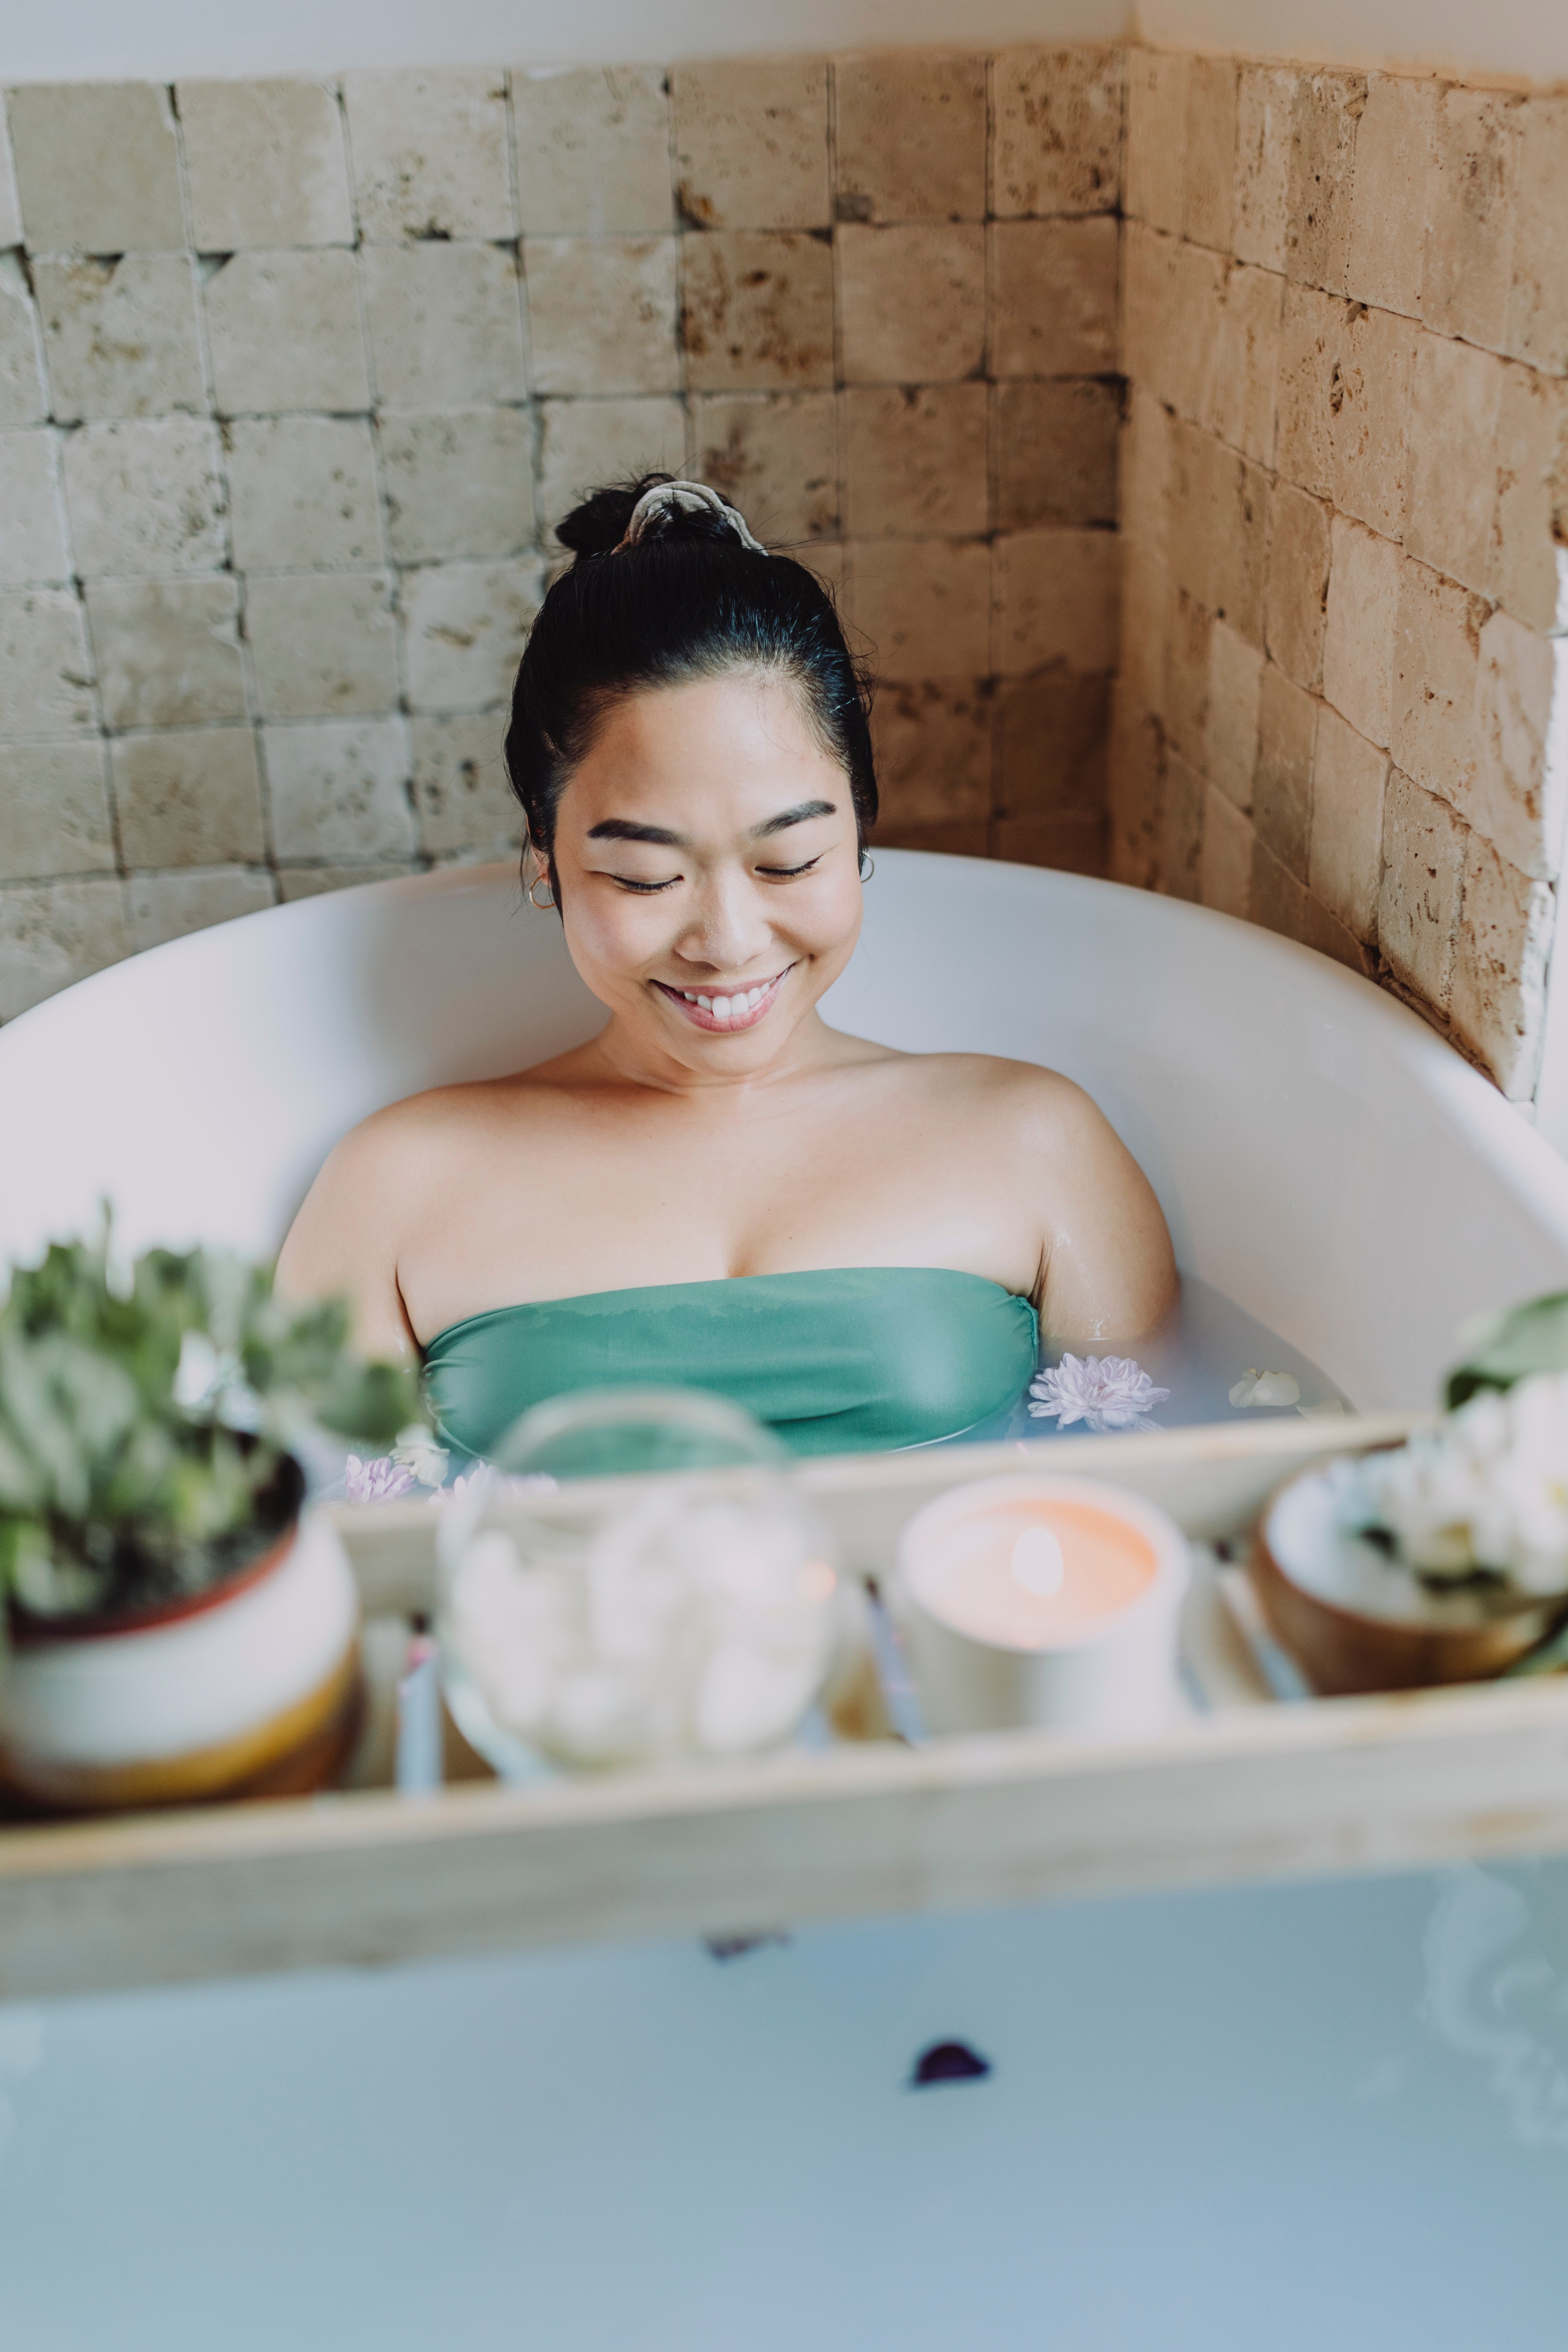 Aproveite o momento do banho para relaxar e aproveitar os benefícios da aromaterapia (Foto: Pexels)